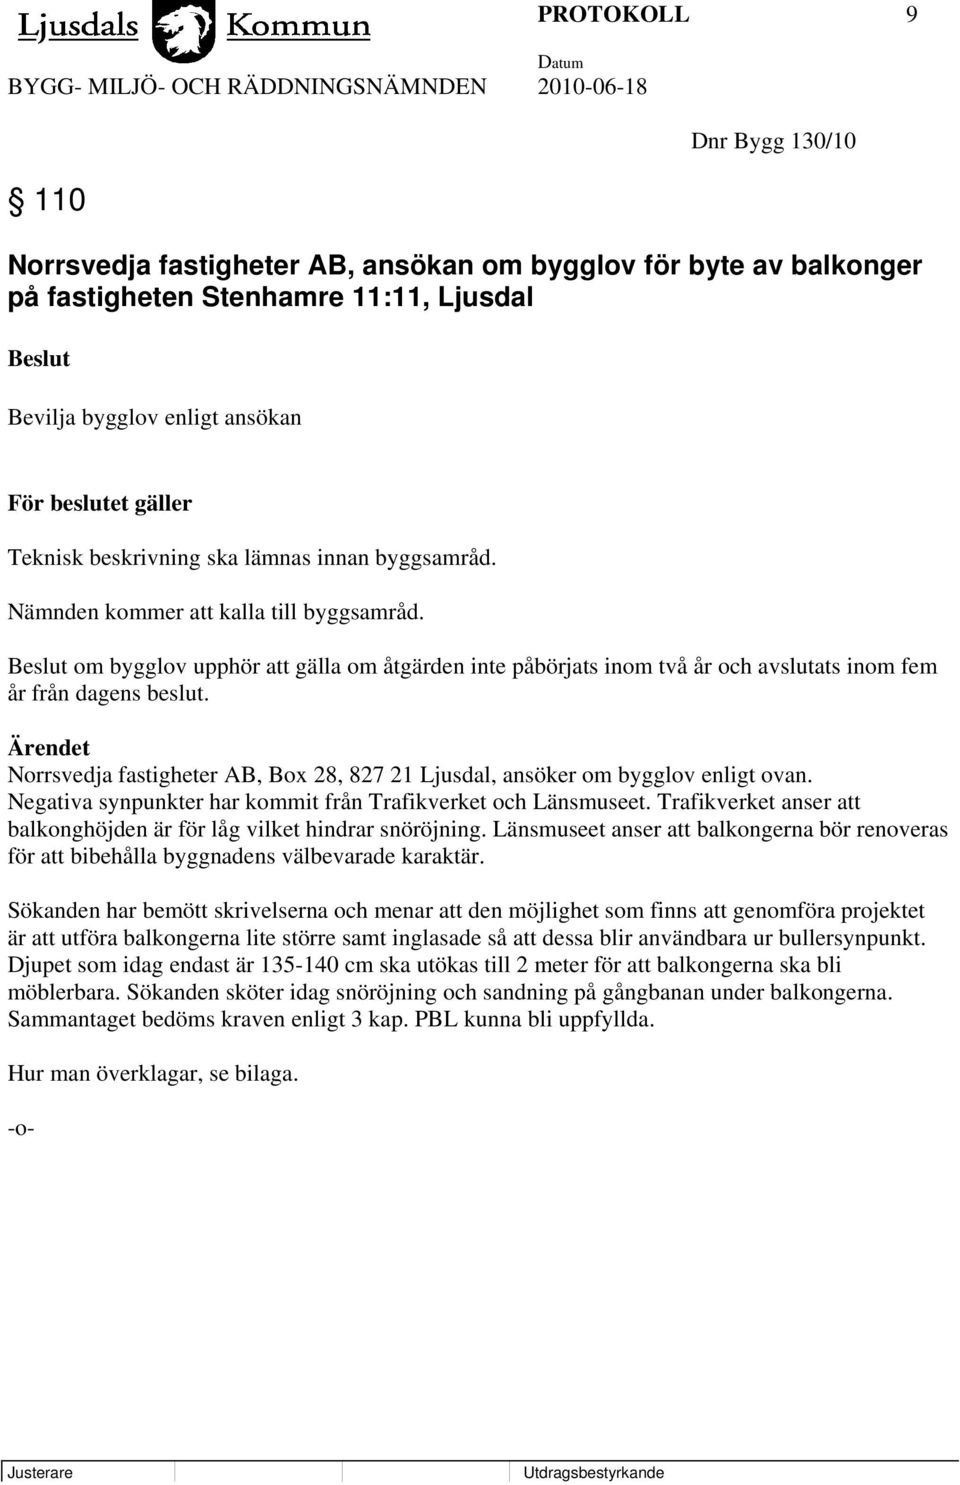 Ärendet Norrsvedja fastigheter AB, Box 28, 827 21 Ljusdal, ansöker om bygglov enligt ovan. Negativa synpunkter har kommit från Trafikverket och Länsmuseet.